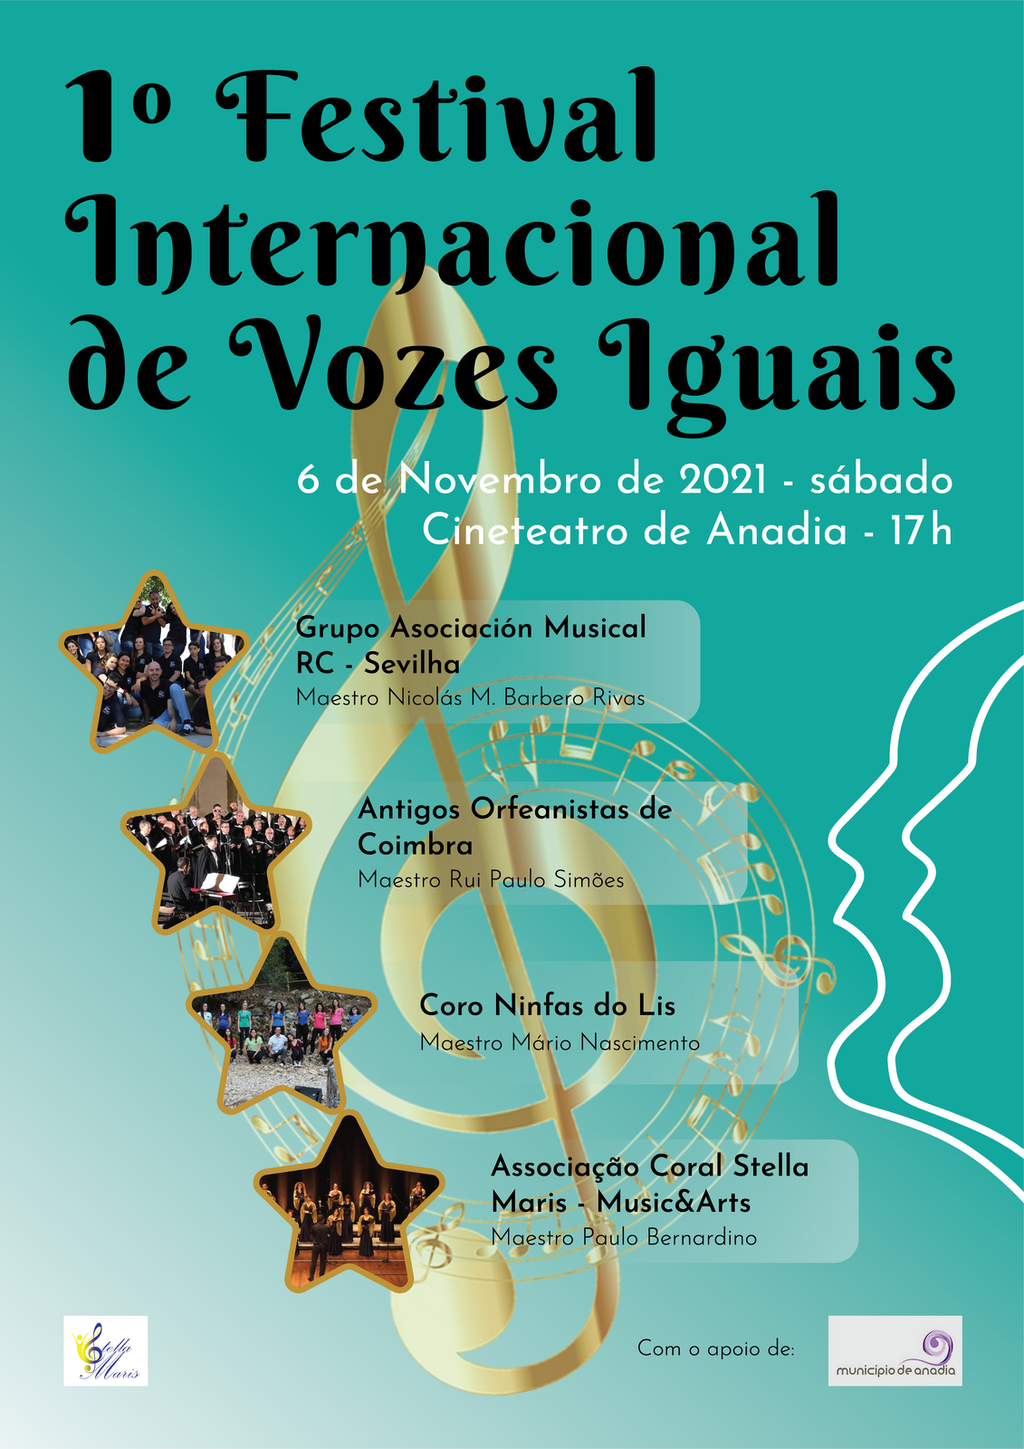 1.º Festival Internacional de Vozes Iguais